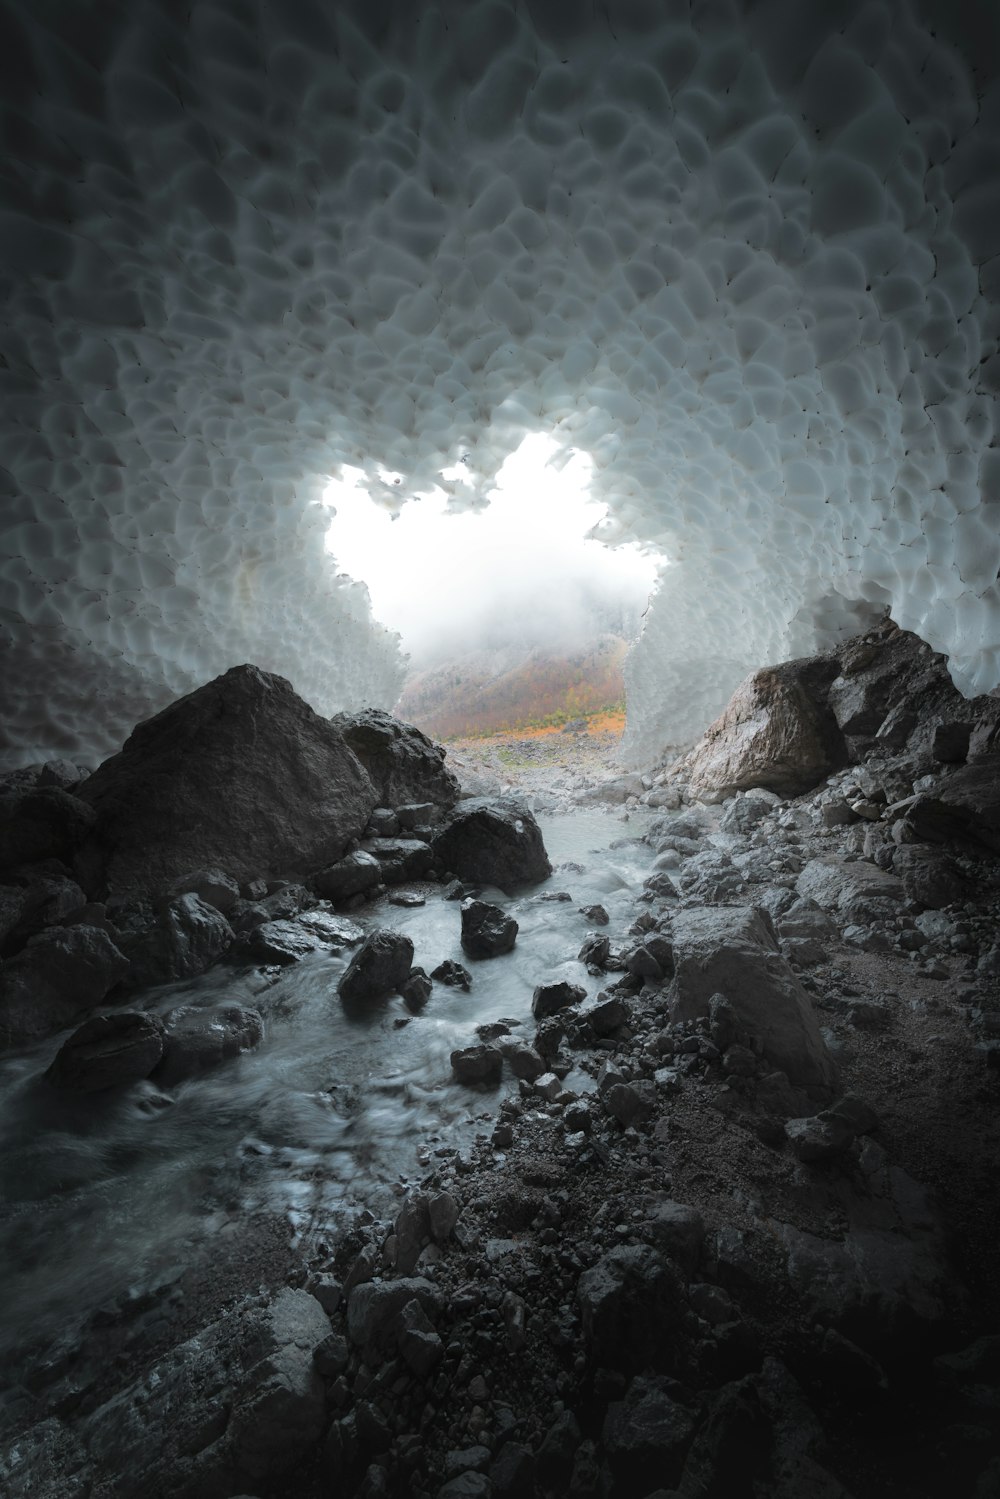 Una grotta piena di rocce e acqua sotto un cielo nuvoloso